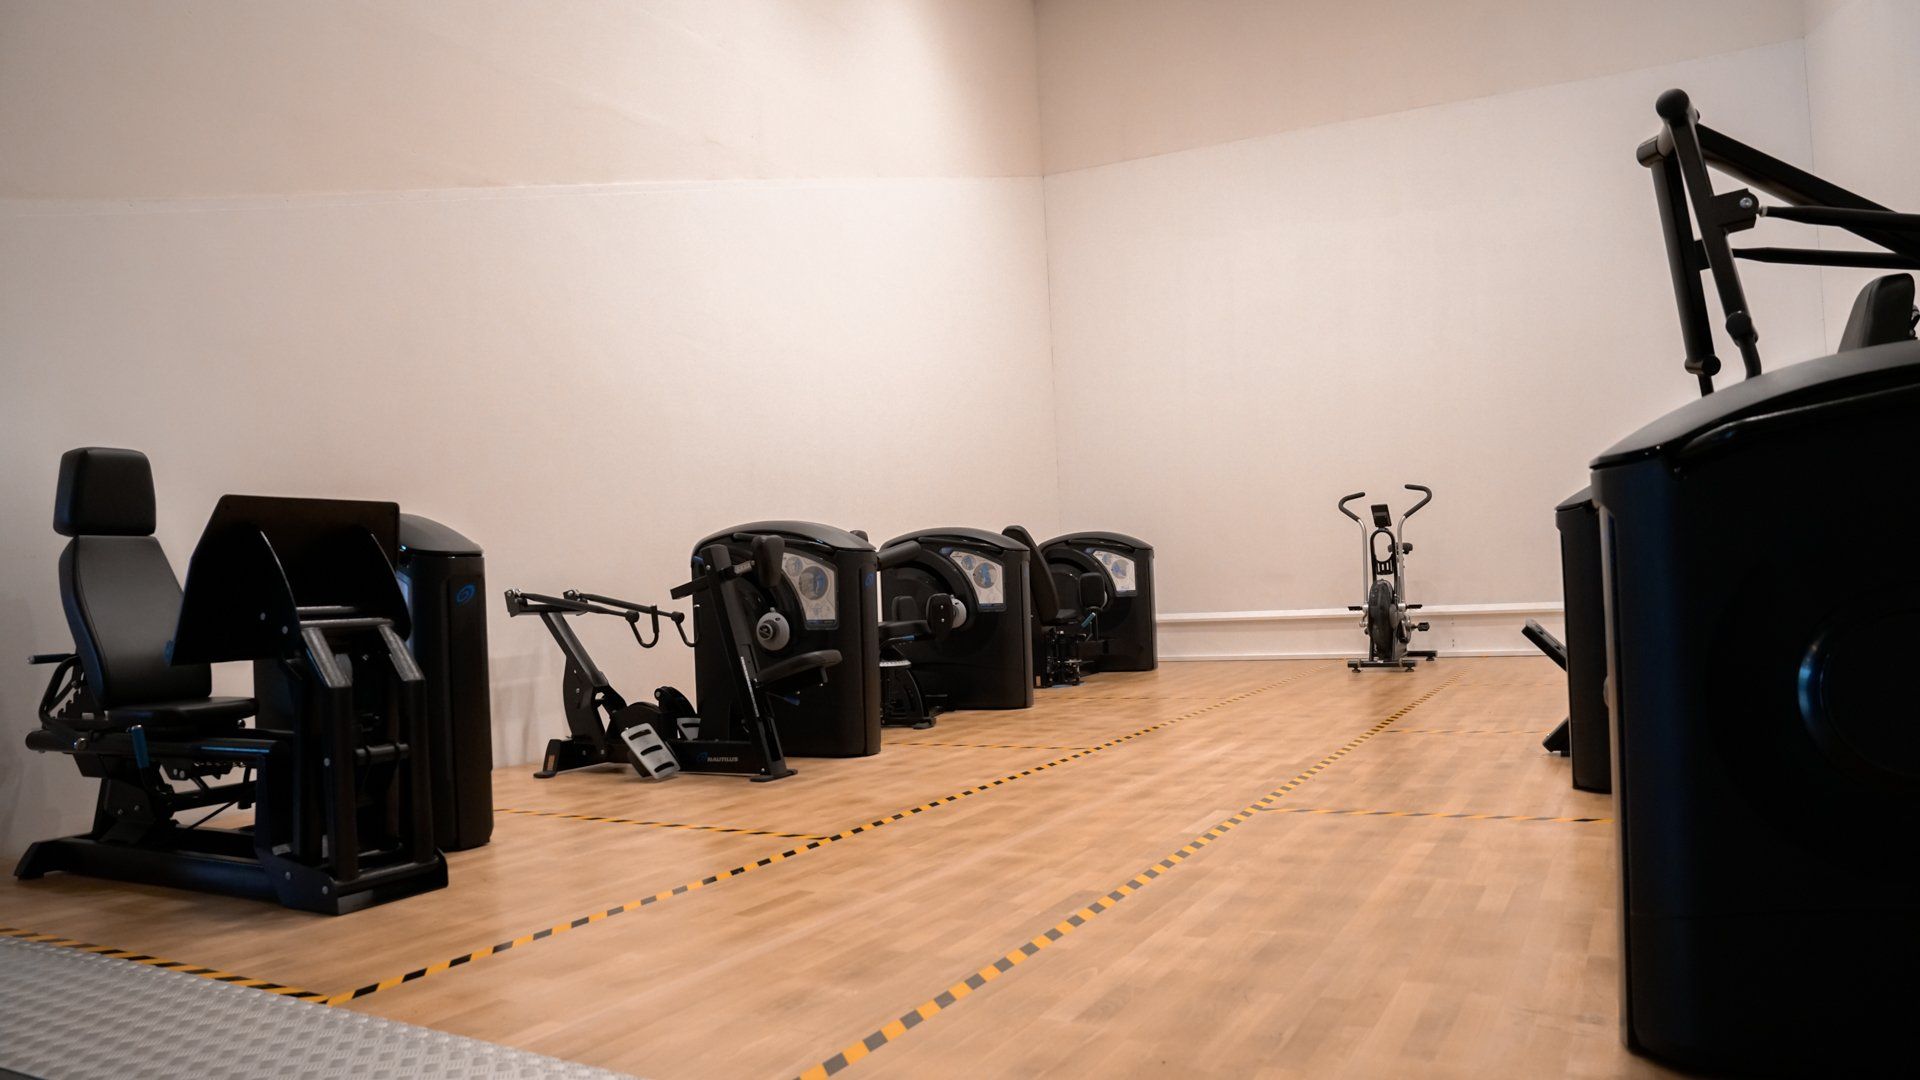 een sportschool met veel fitnessapparatuur op de vloer.